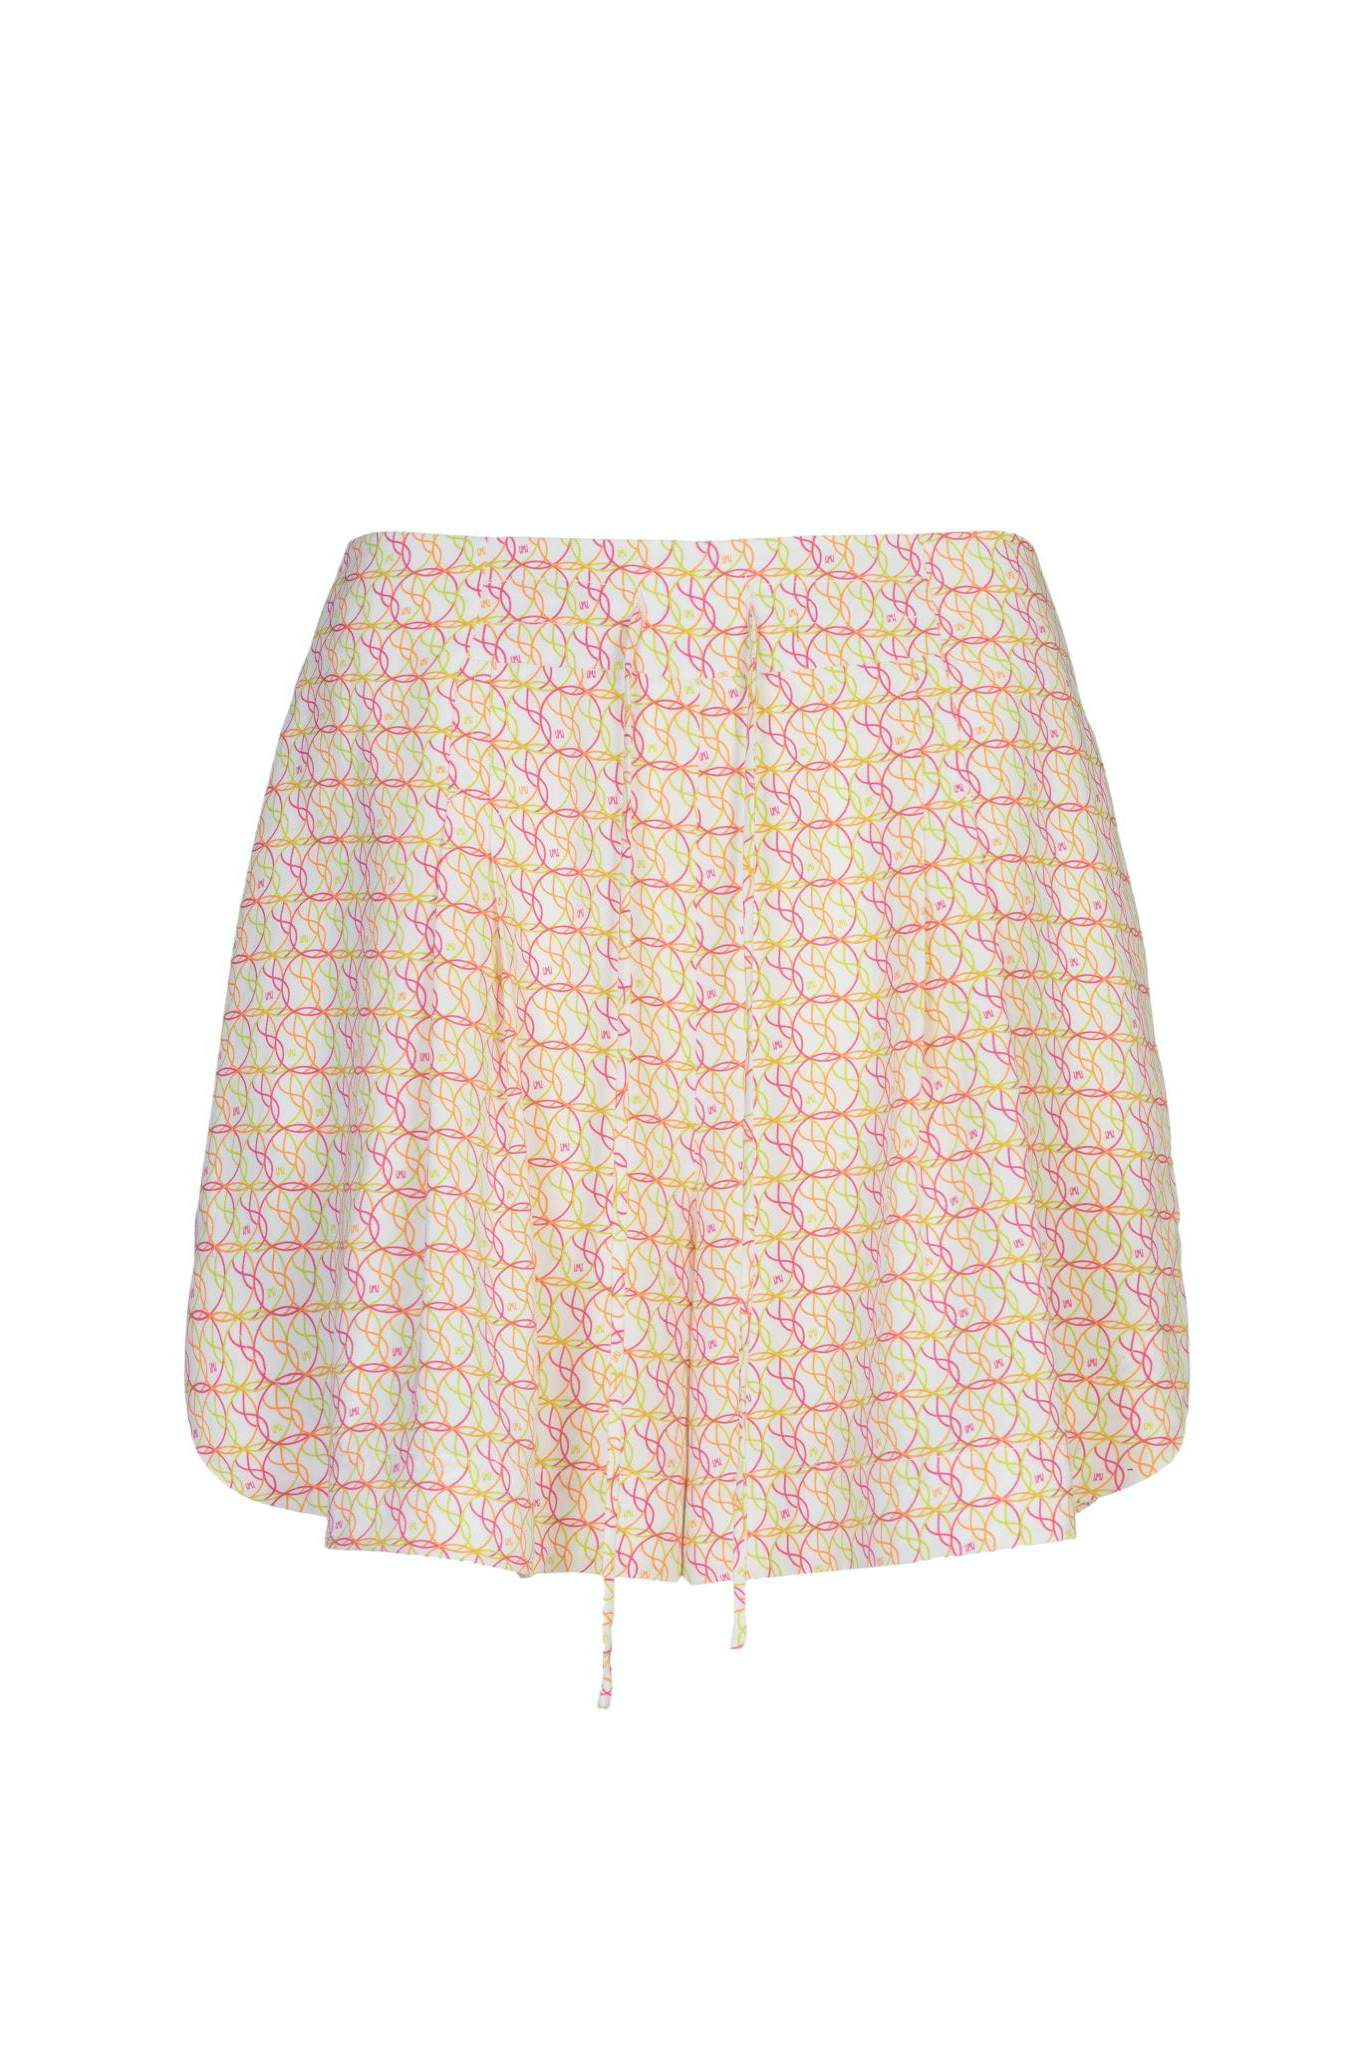 Printed Lyocell Shorts with Drawstring